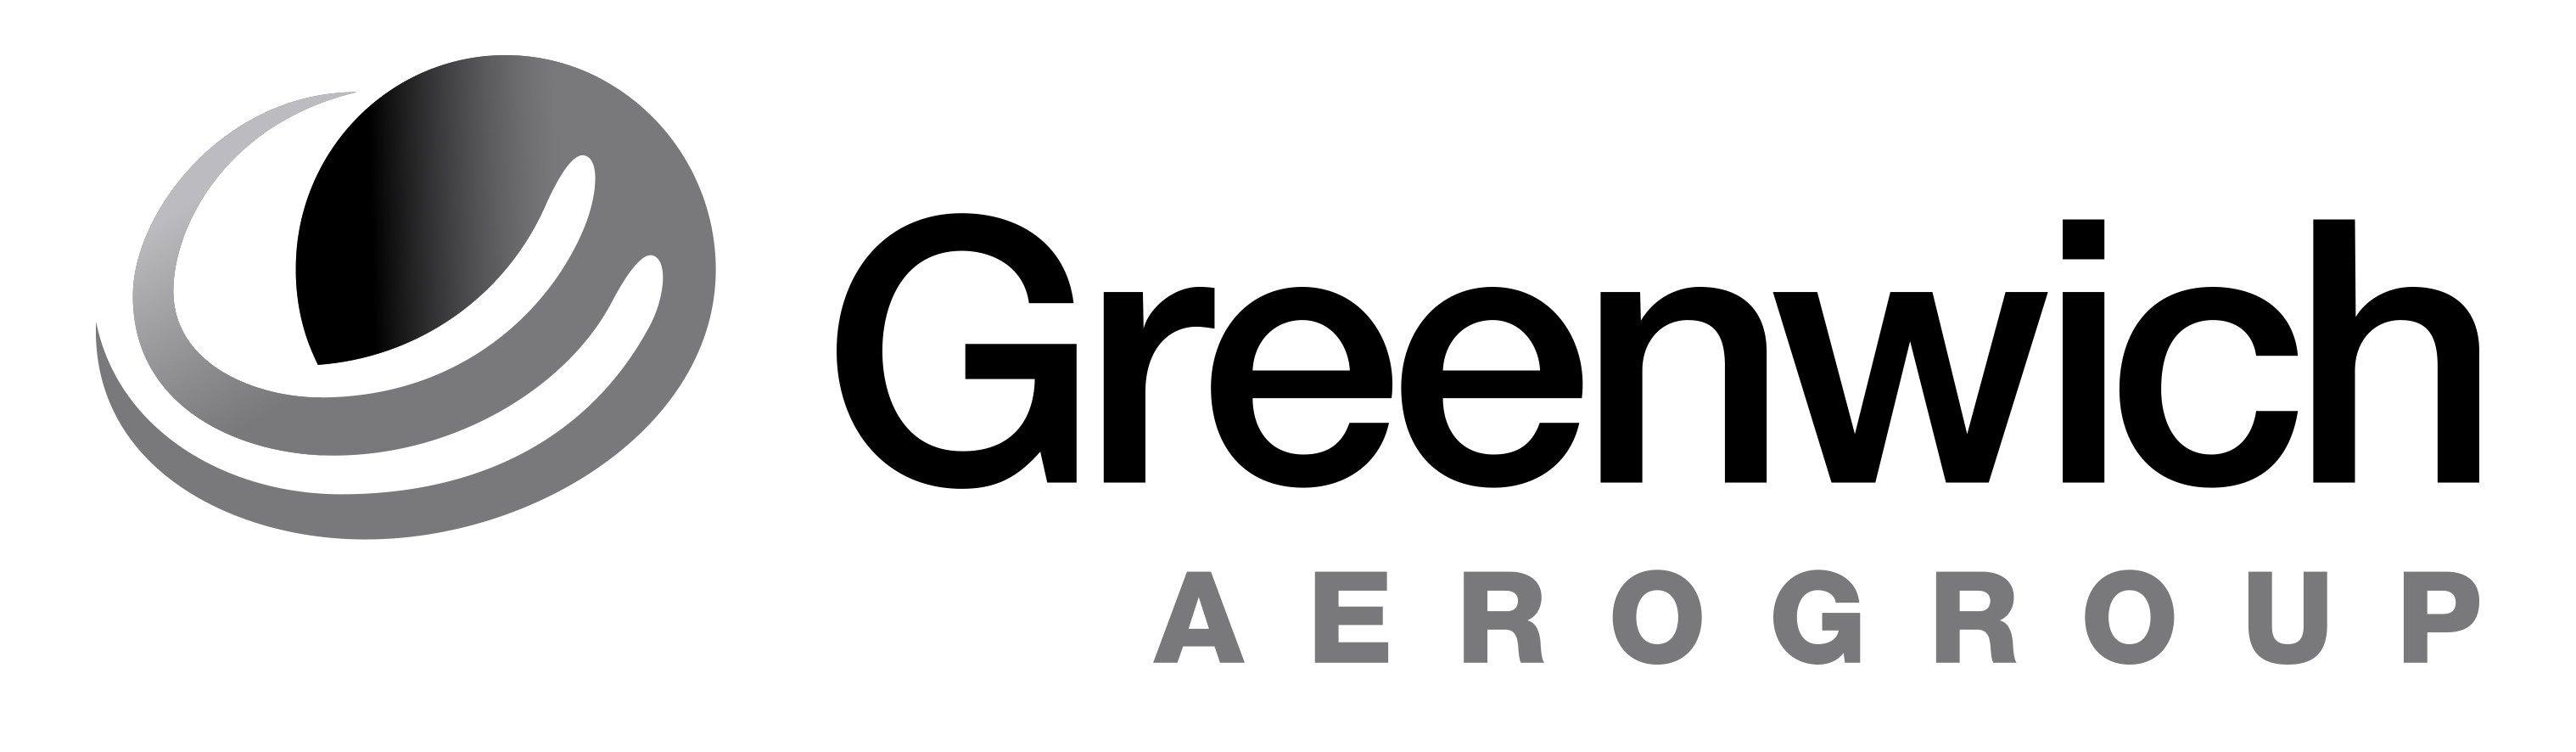 DynCorp Logo - greenwich aerogroup logo | DynCorp International